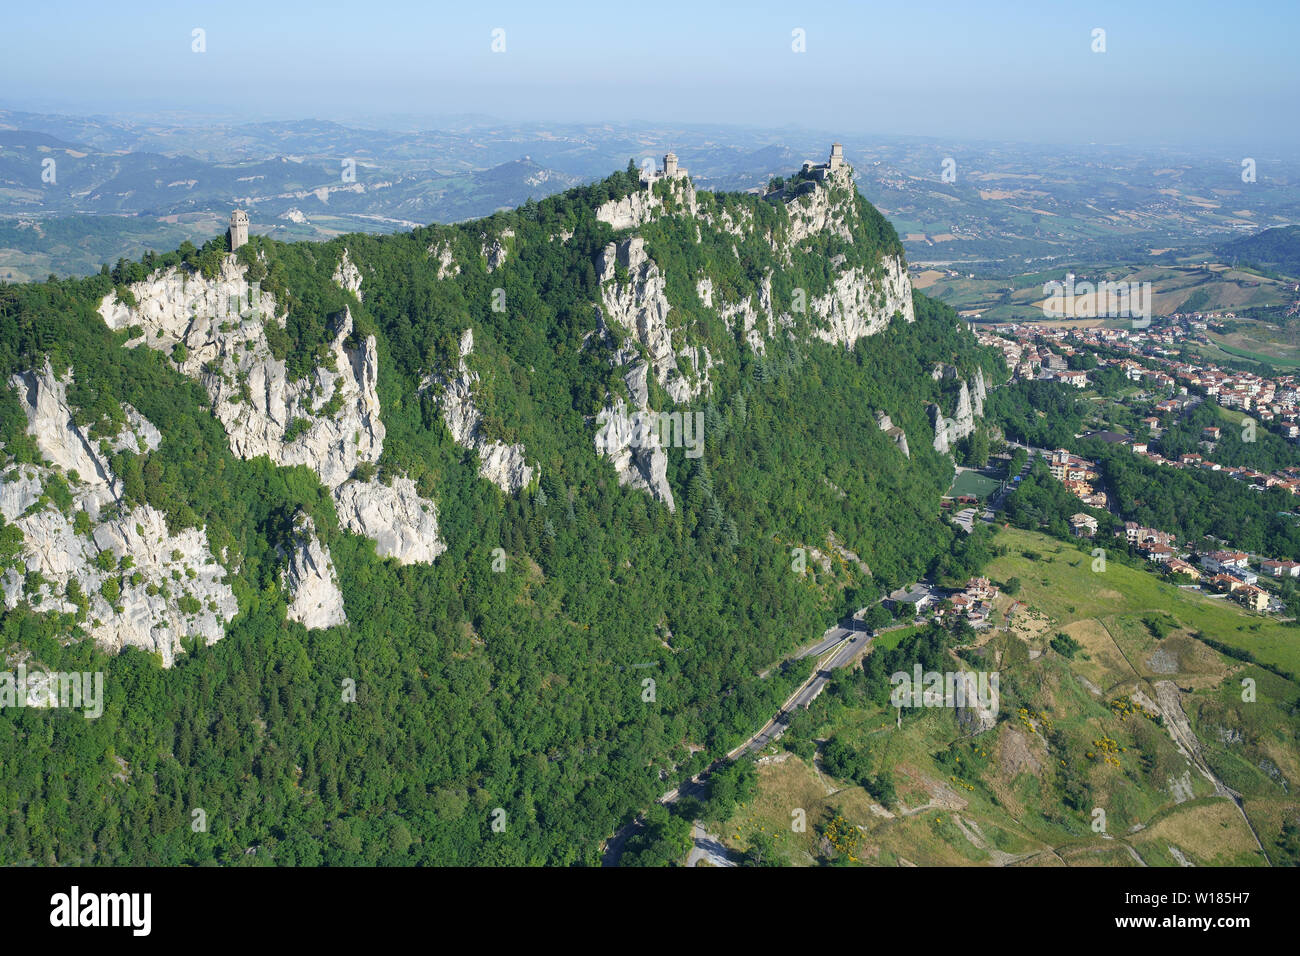 VISTA AÉREA. Monte Titano (elevación: 749m) con sus tres emblemáticos castillos. República de San Marino. Foto de stock